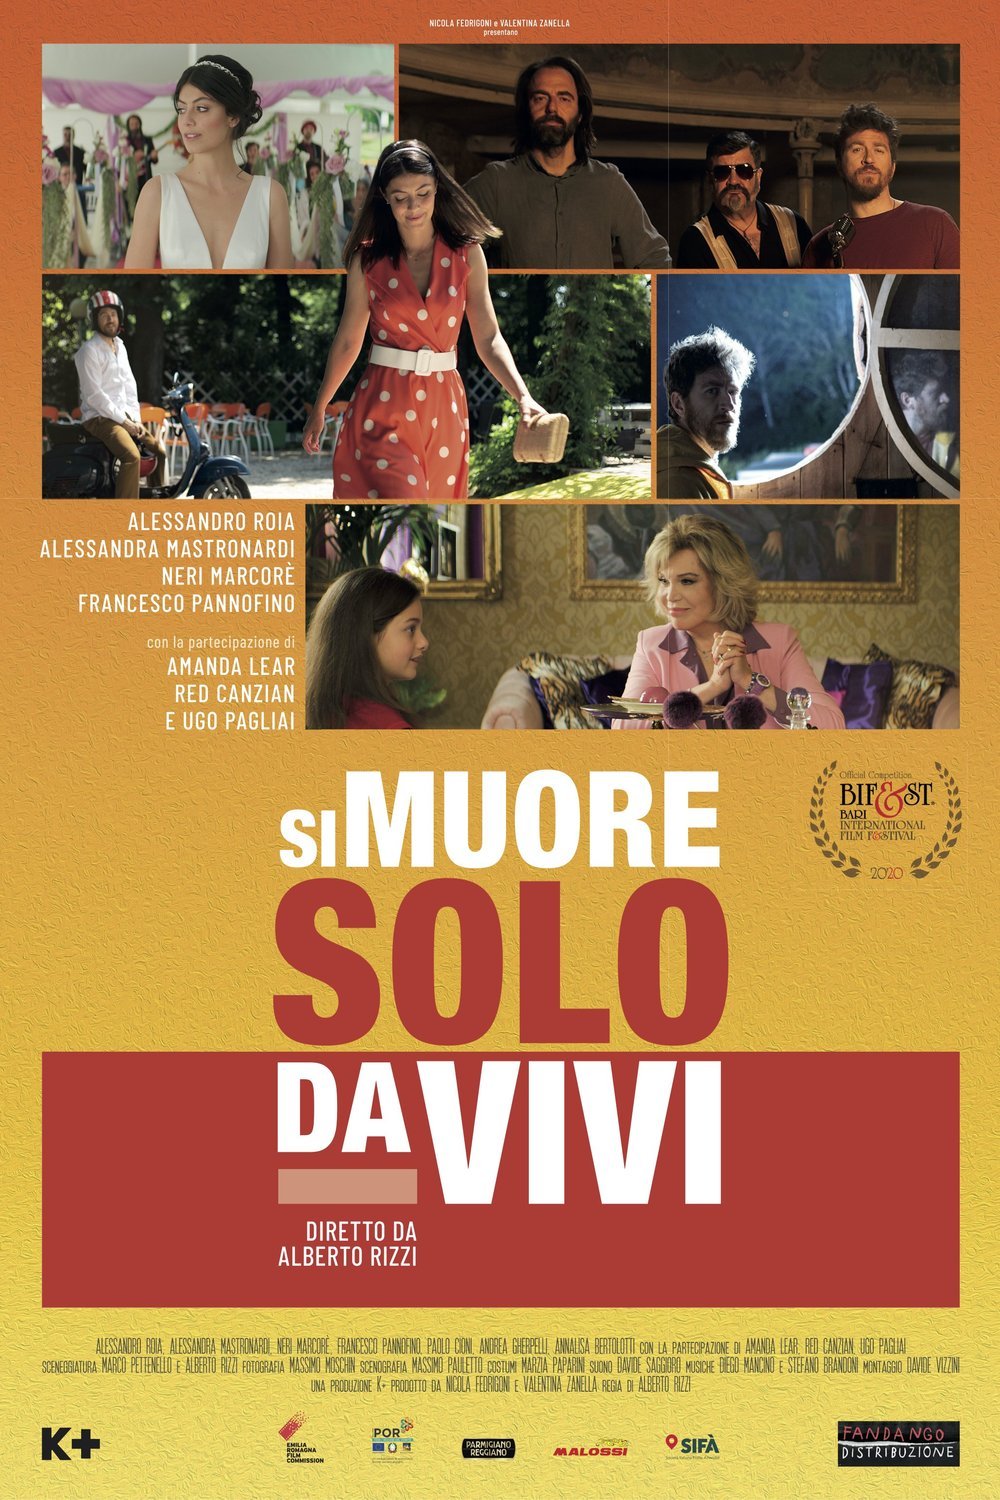 Italian poster of the movie Si muore solo da vivi